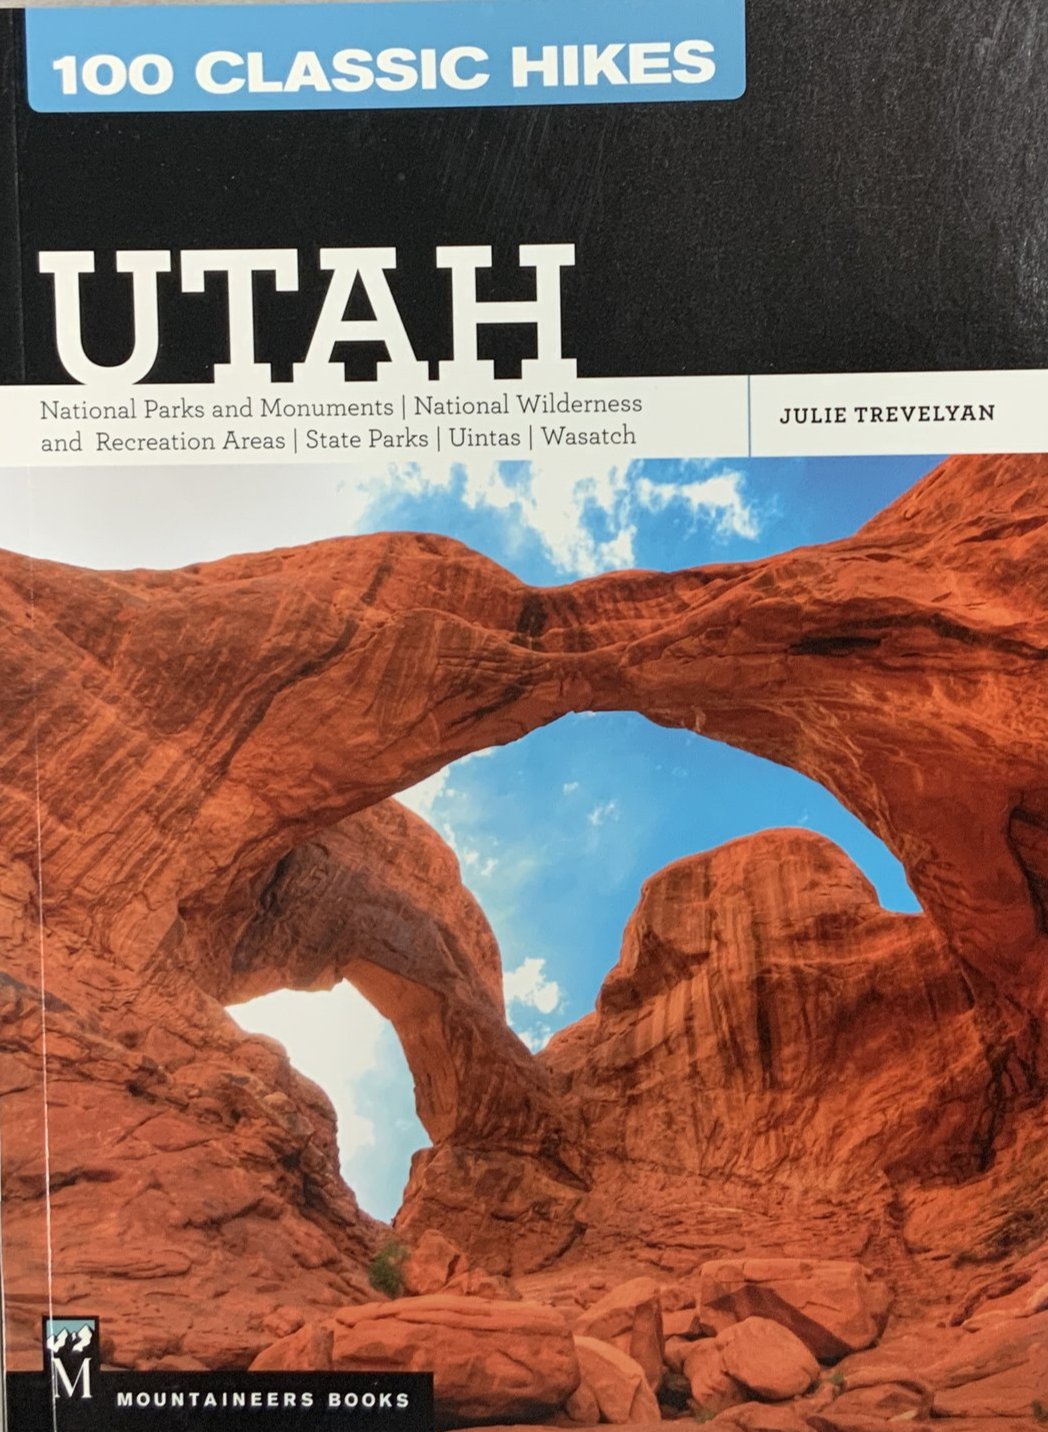 100 Classic Hikes: Utah